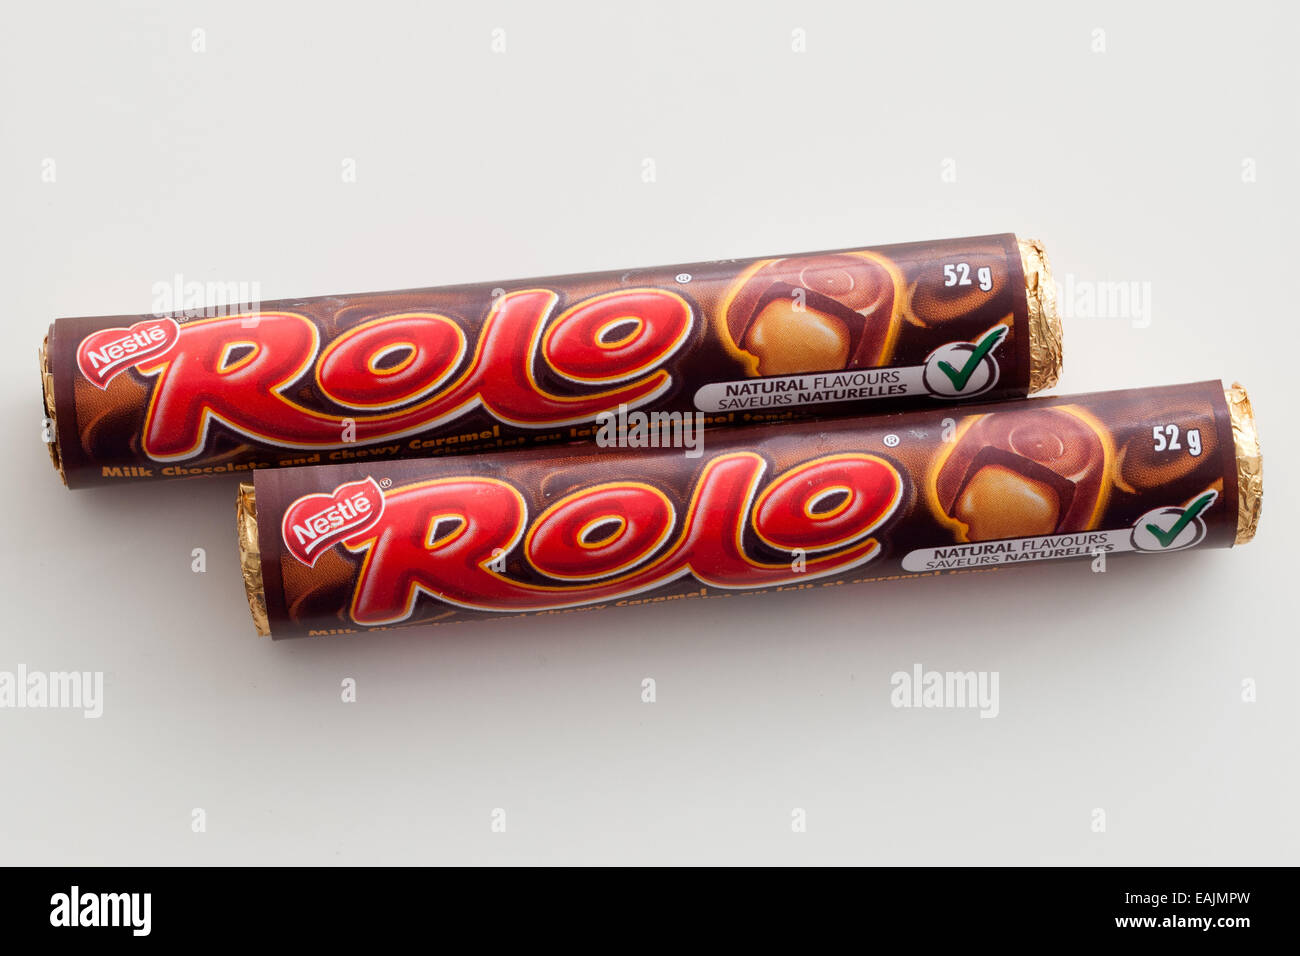 Tubi di Rolo candy, un prodotto dolciario da Nestlé, tranne che negli Stati Uniti dove è realizzato sotto licenza da parte di Hershey Company. Foto Stock